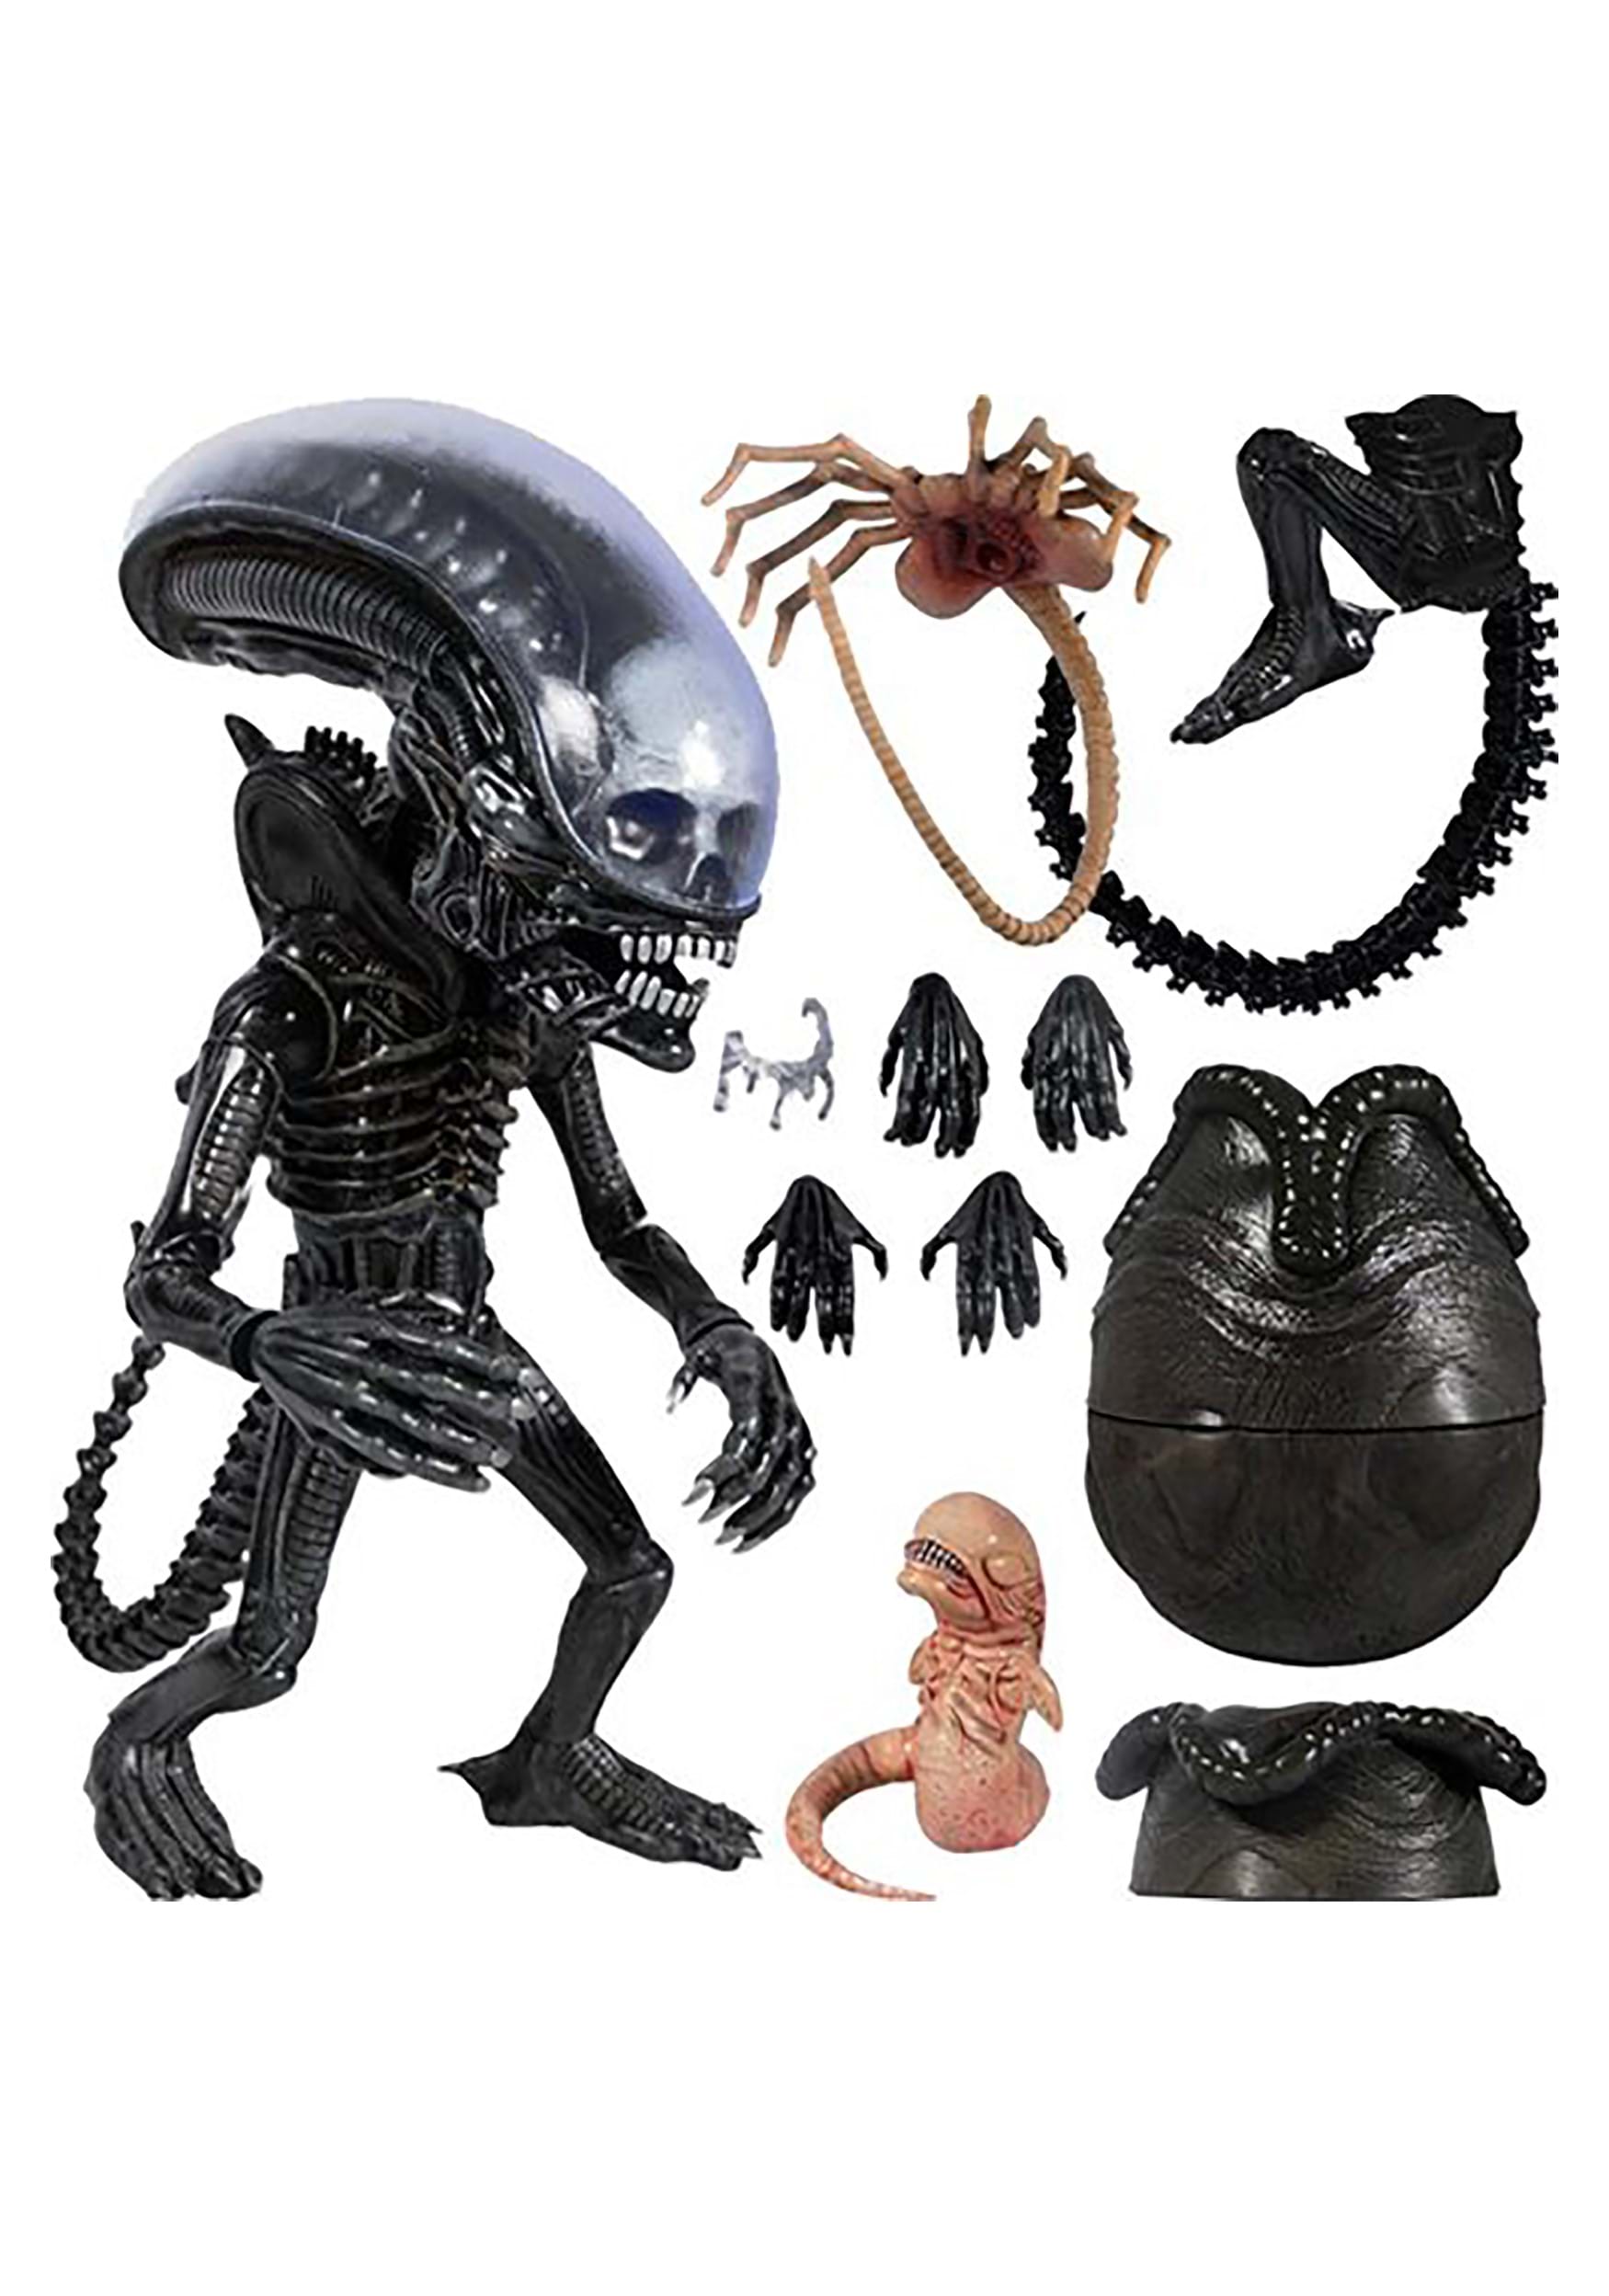 Mezco Deluxe Alien Figure